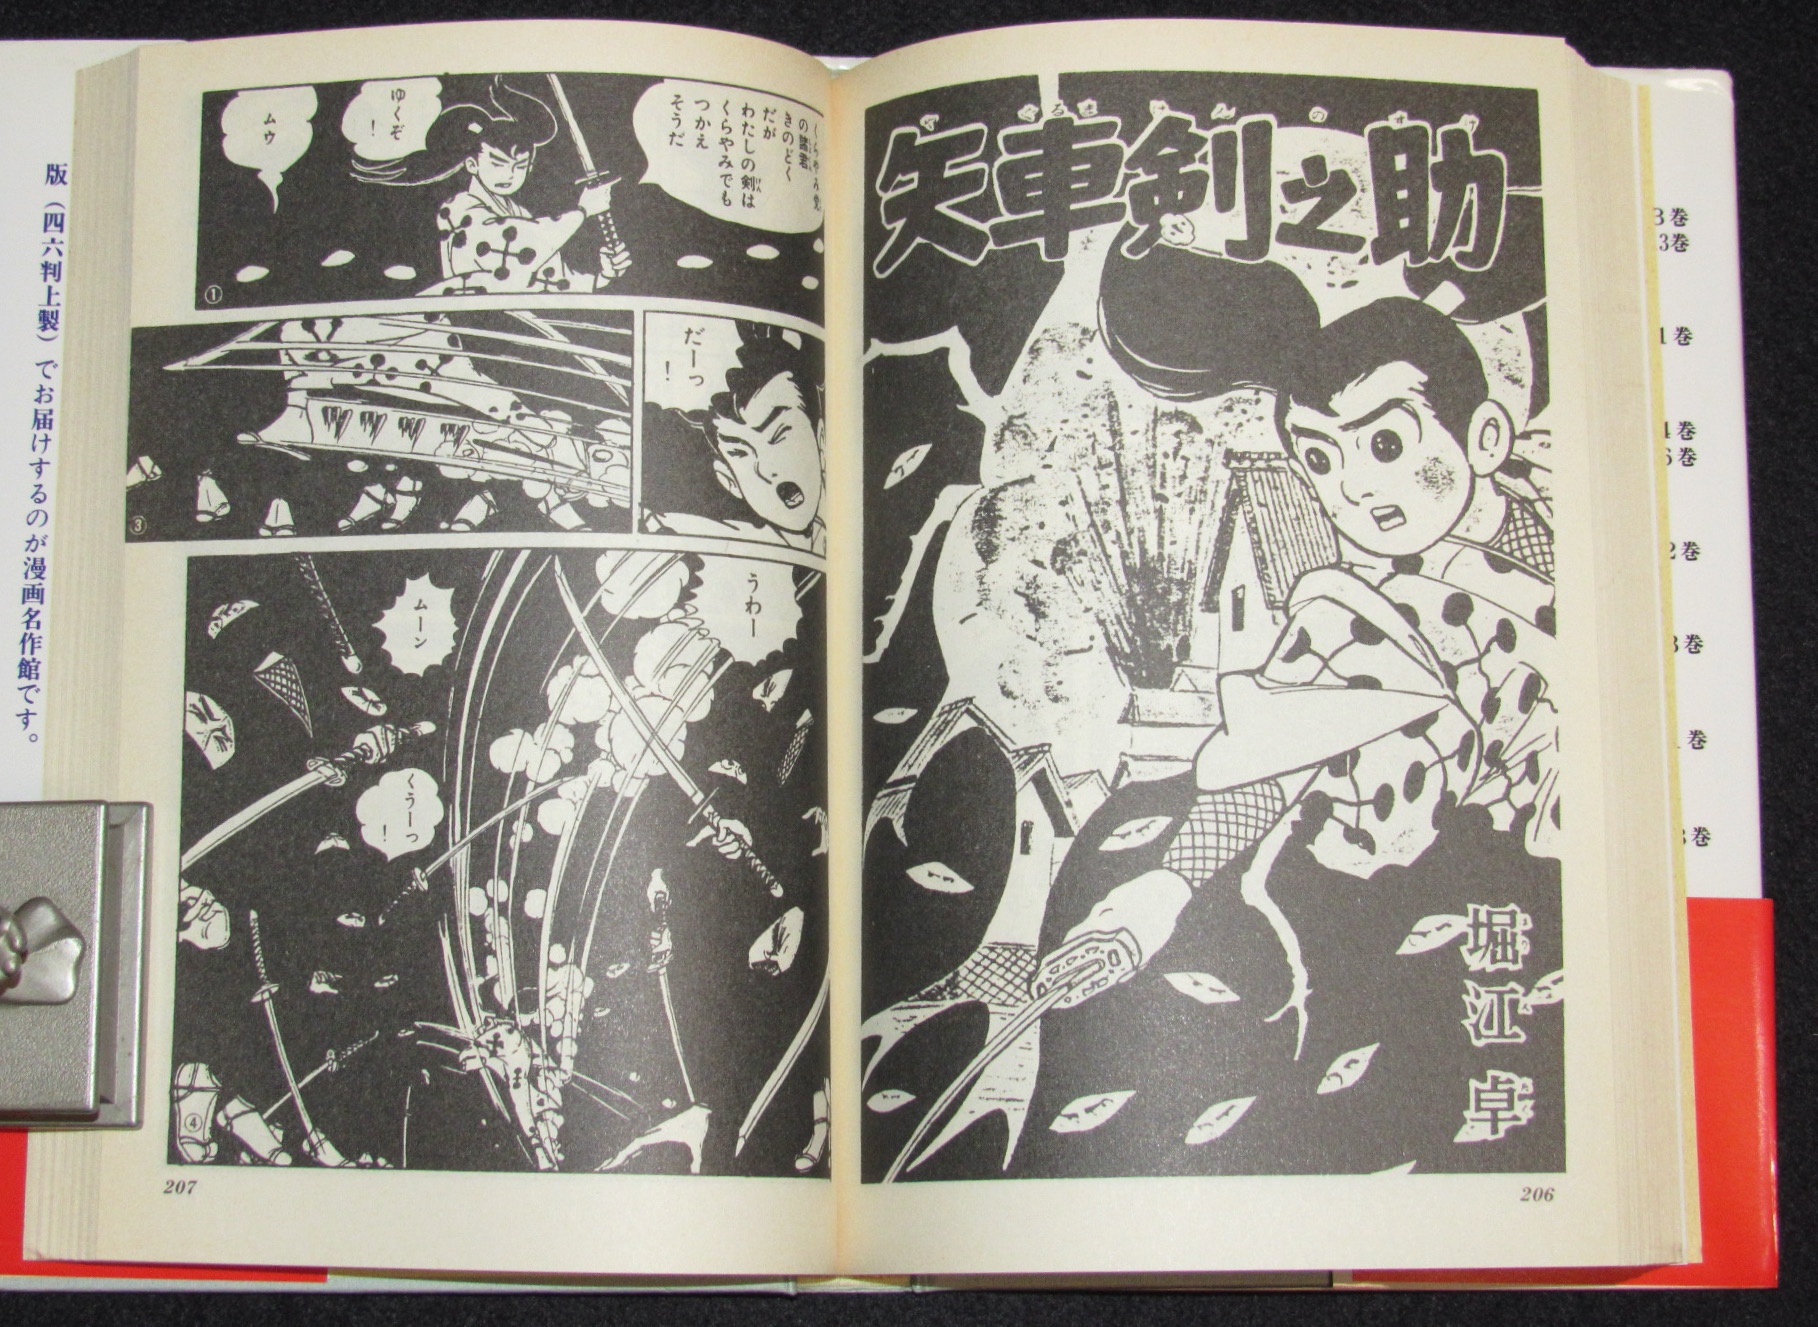 矢車剣之助」昭和３２年８月号「少年」付録漫画 矢車剣之助最初の作品 